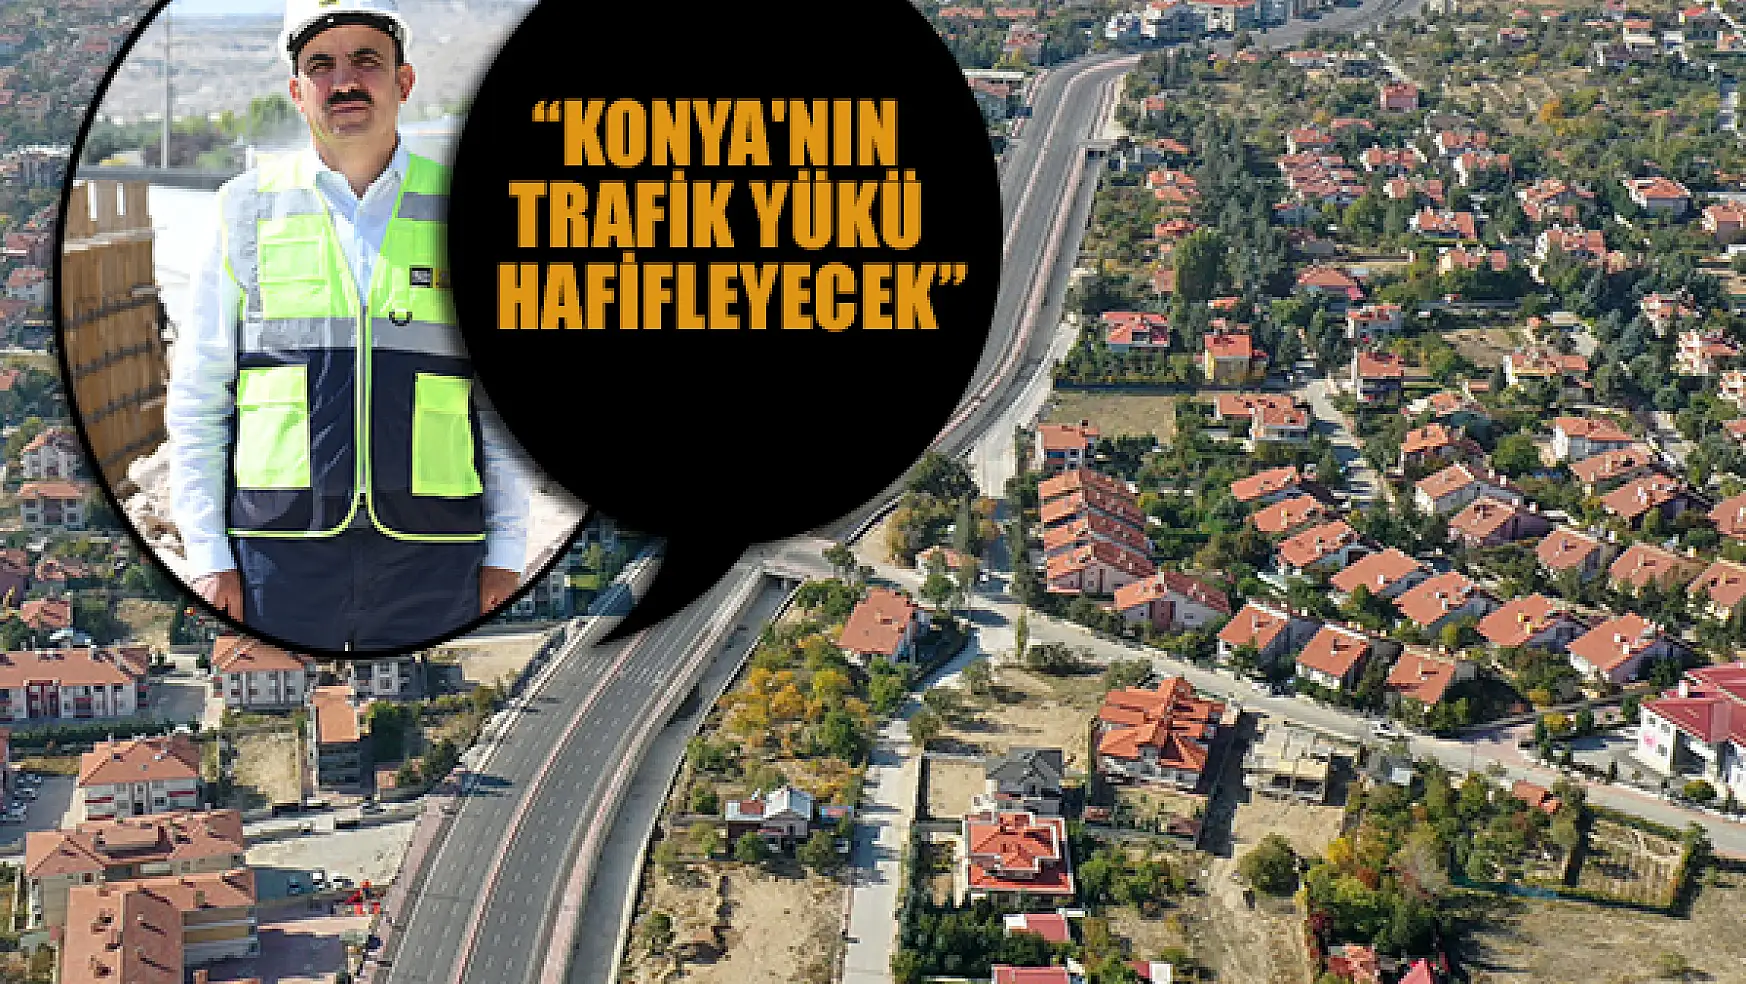 Konya'nın trafik yükünü hafifletecek proje